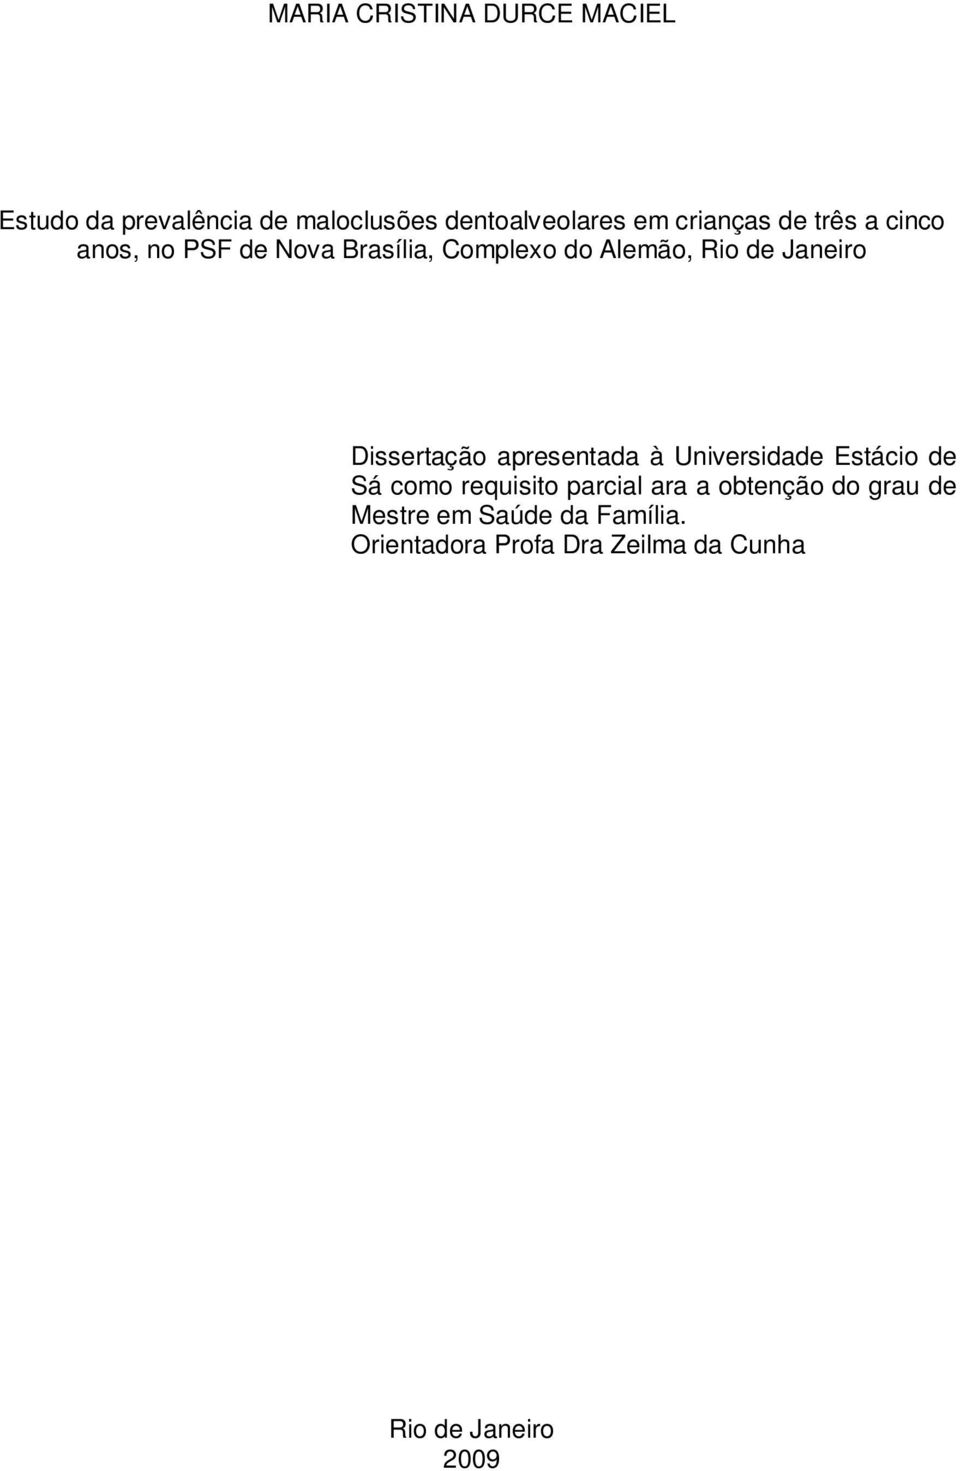 Dissertação apresentada à Universidade Estácio de Sá como requisito parcial ara a obtenção